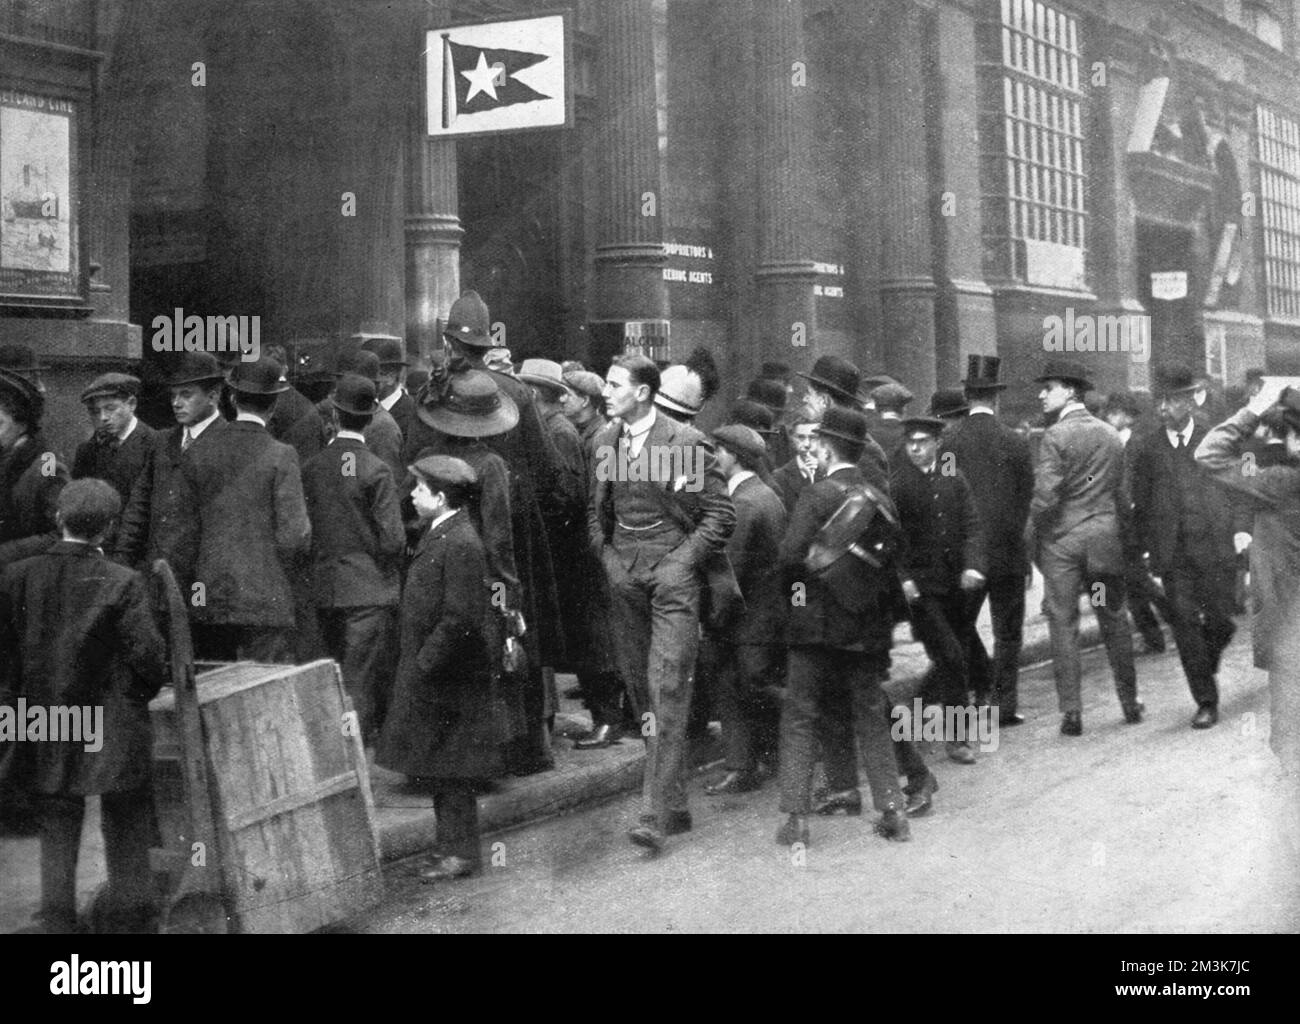 Après l'annonce de la catastrophe du Titanic, les chercheurs de nouvelles devant le bureau de Leadenhall Street de la ligne des étoiles blanches. Date : 20th avril 1912 Banque D'Images